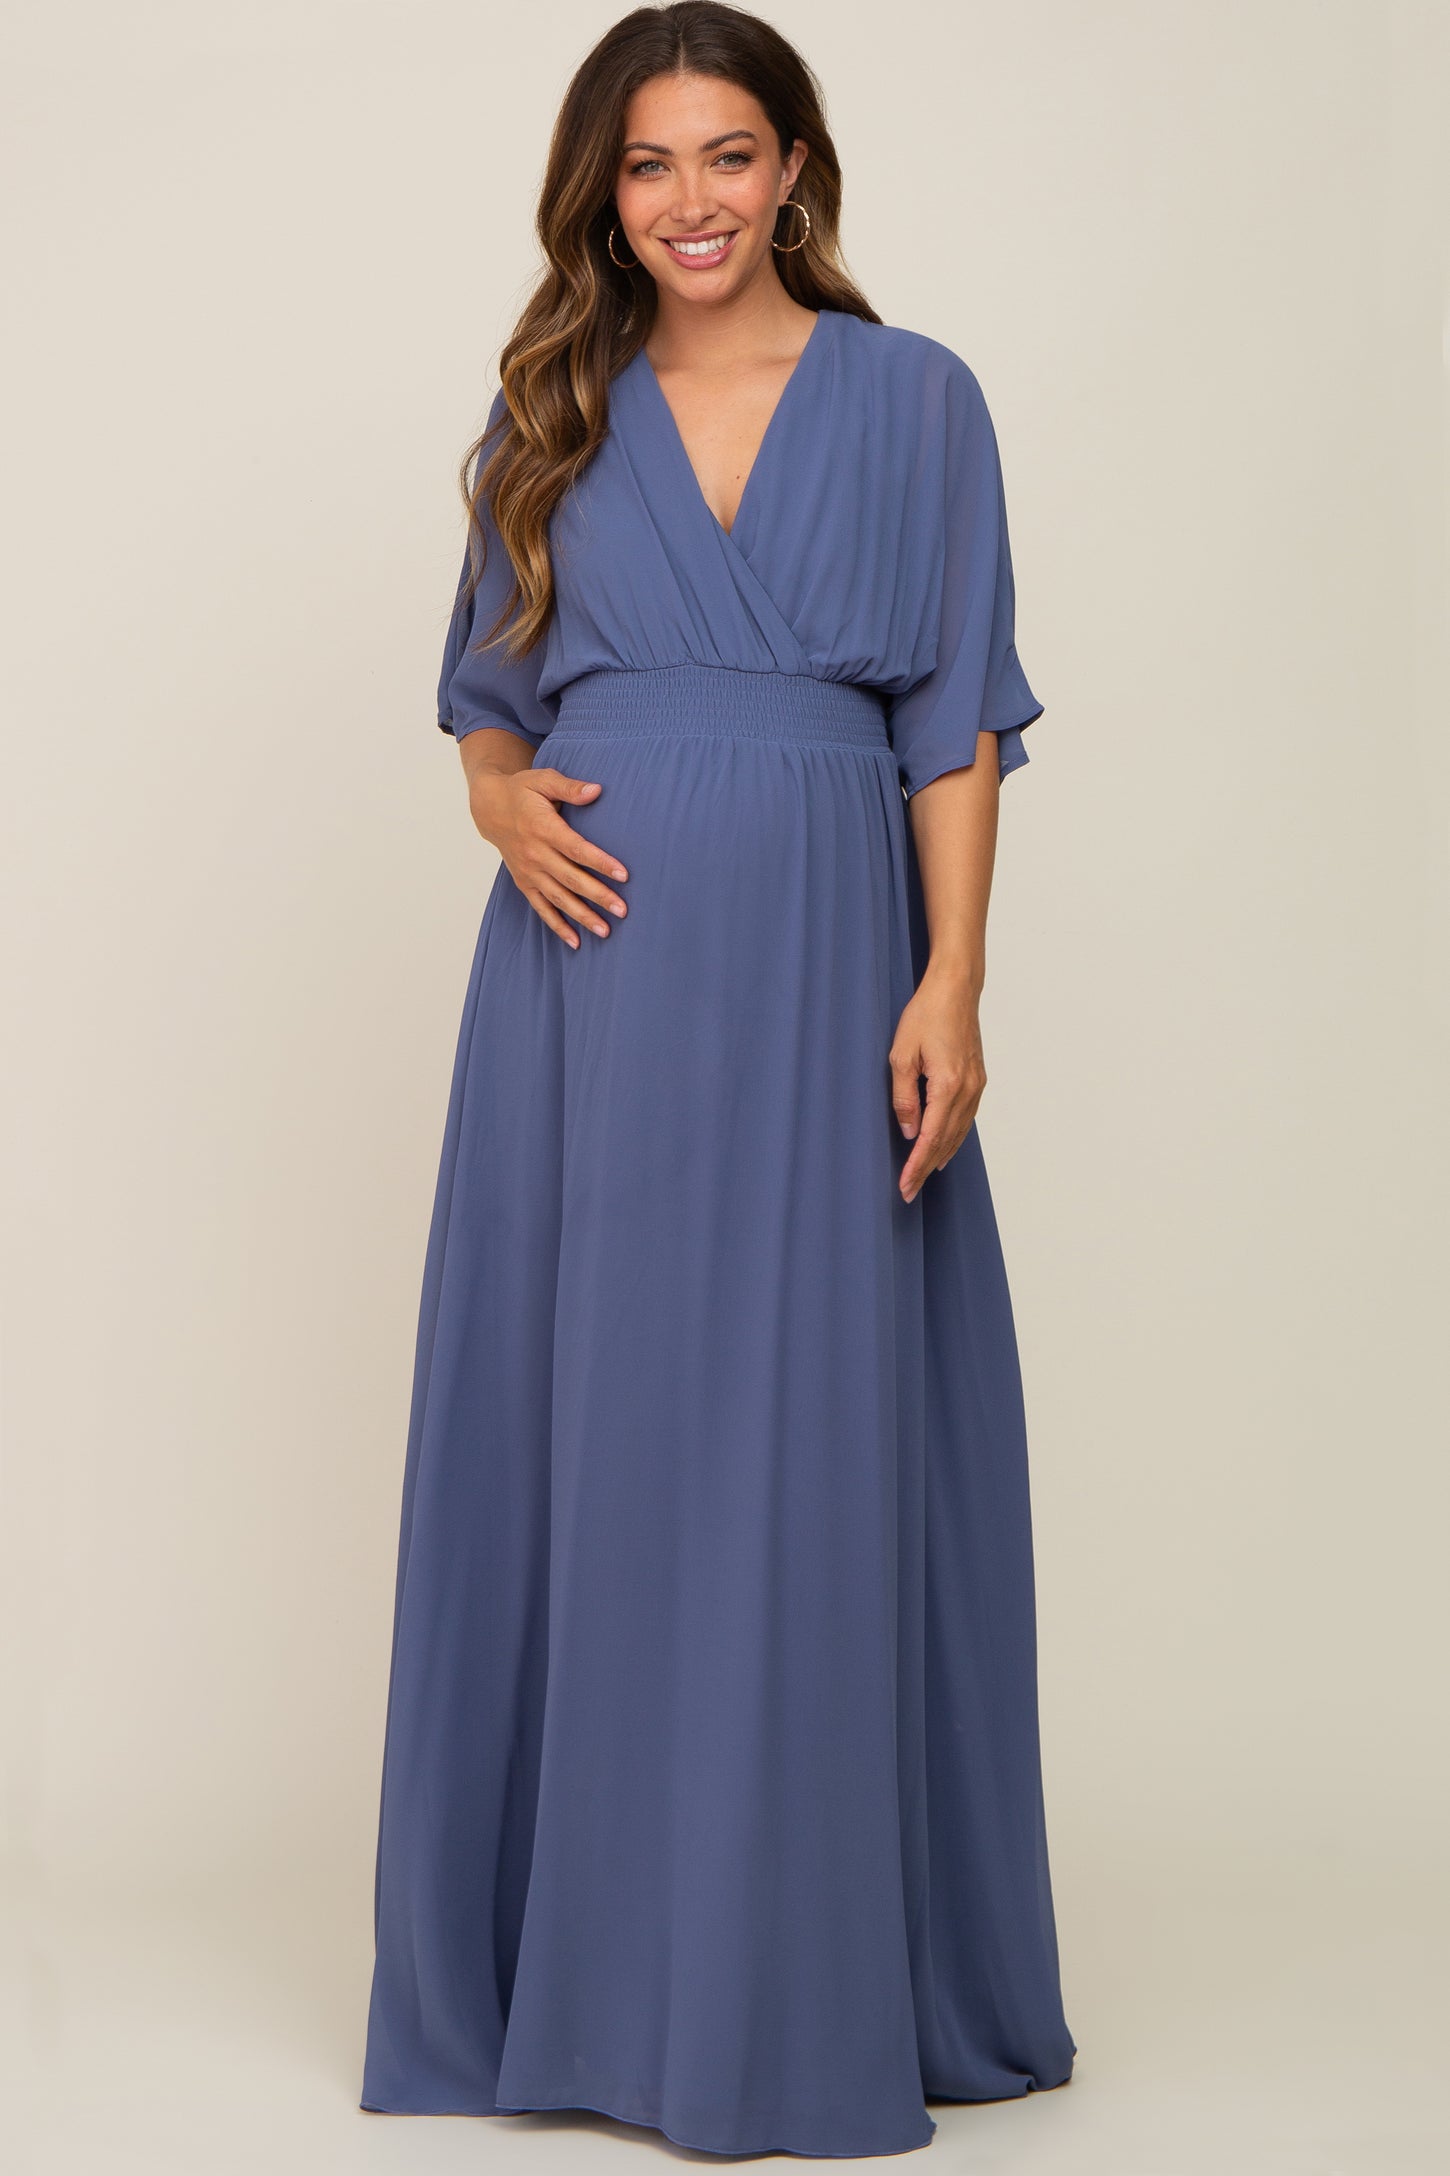 Navy Chiffon V-Neck Smocked Waist Maternity Maxi Dress